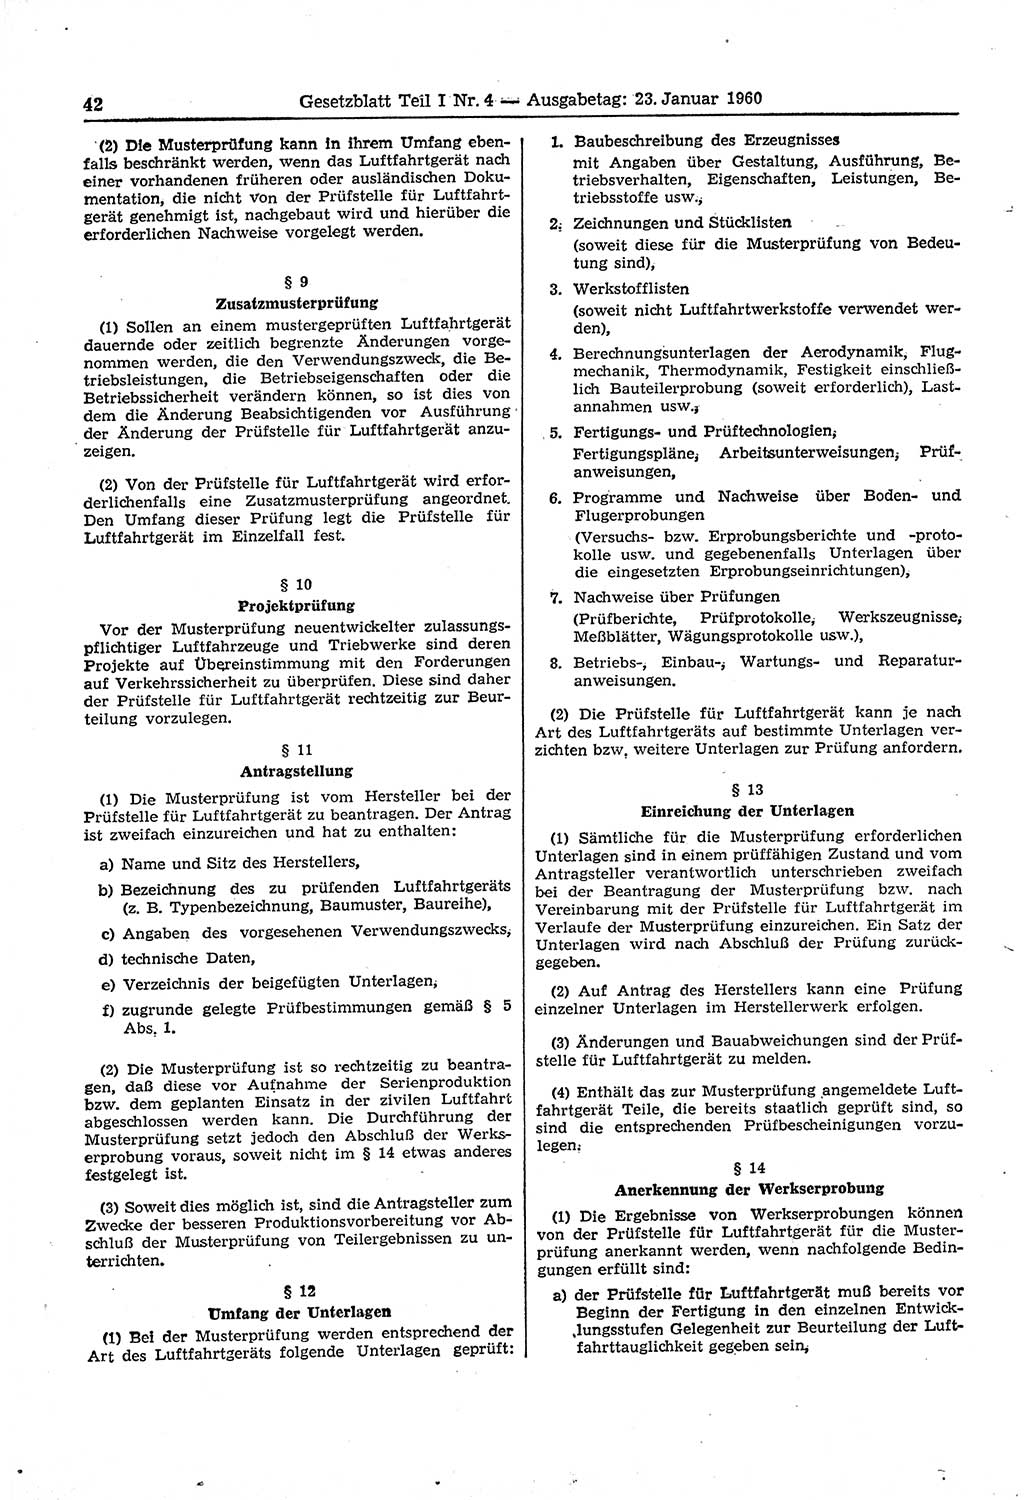 Gesetzblatt (GBl.) der Deutschen Demokratischen Republik (DDR) Teil Ⅰ 1960, Seite 42 (GBl. DDR Ⅰ 1960, S. 42)